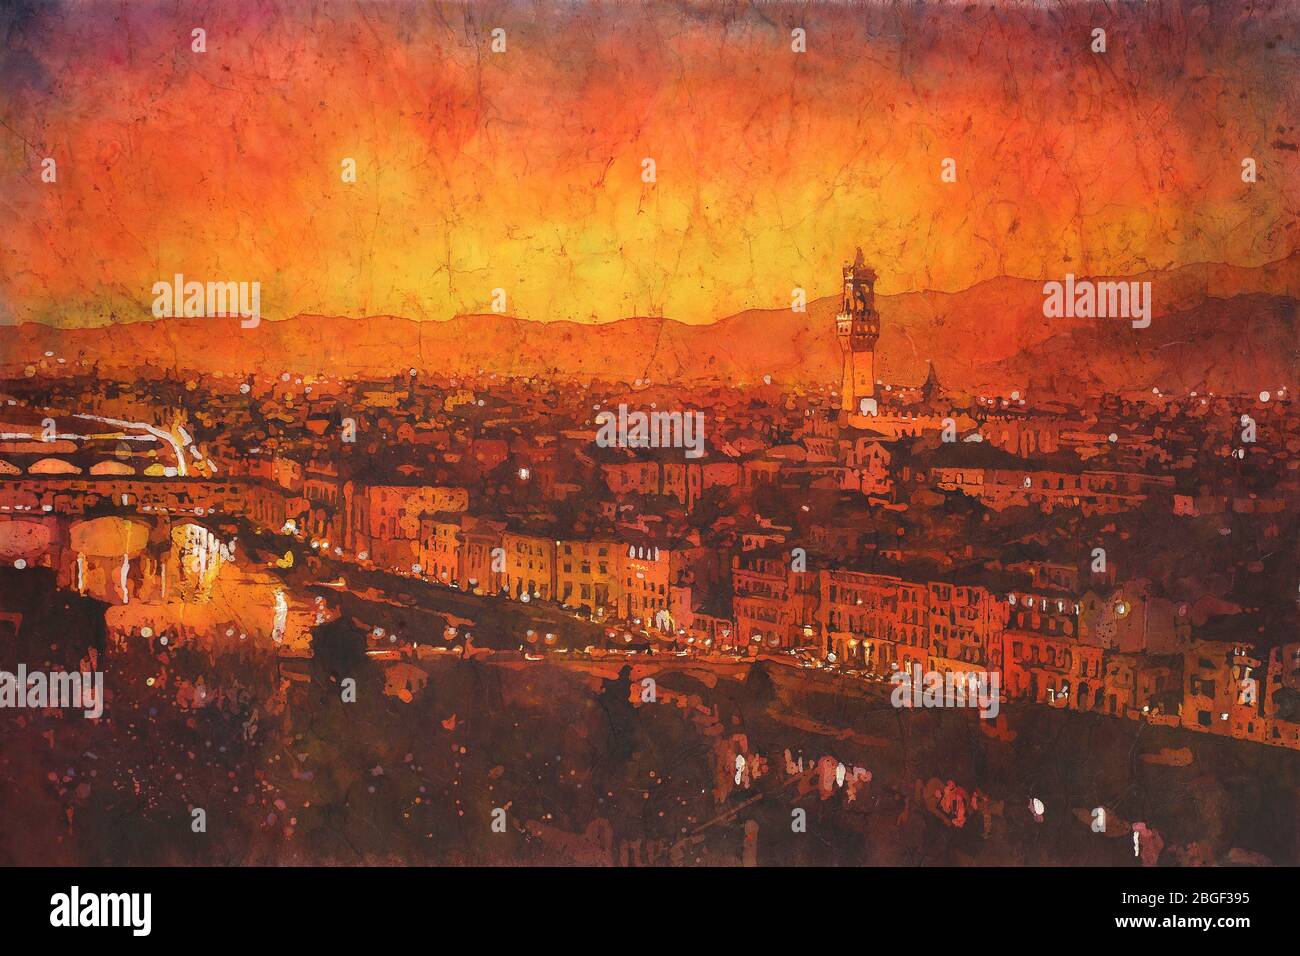 Palazzo et Ponte Vecchio à Florence, Italie au coucher du soleil. Peinture batik aquarelle. Banque D'Images